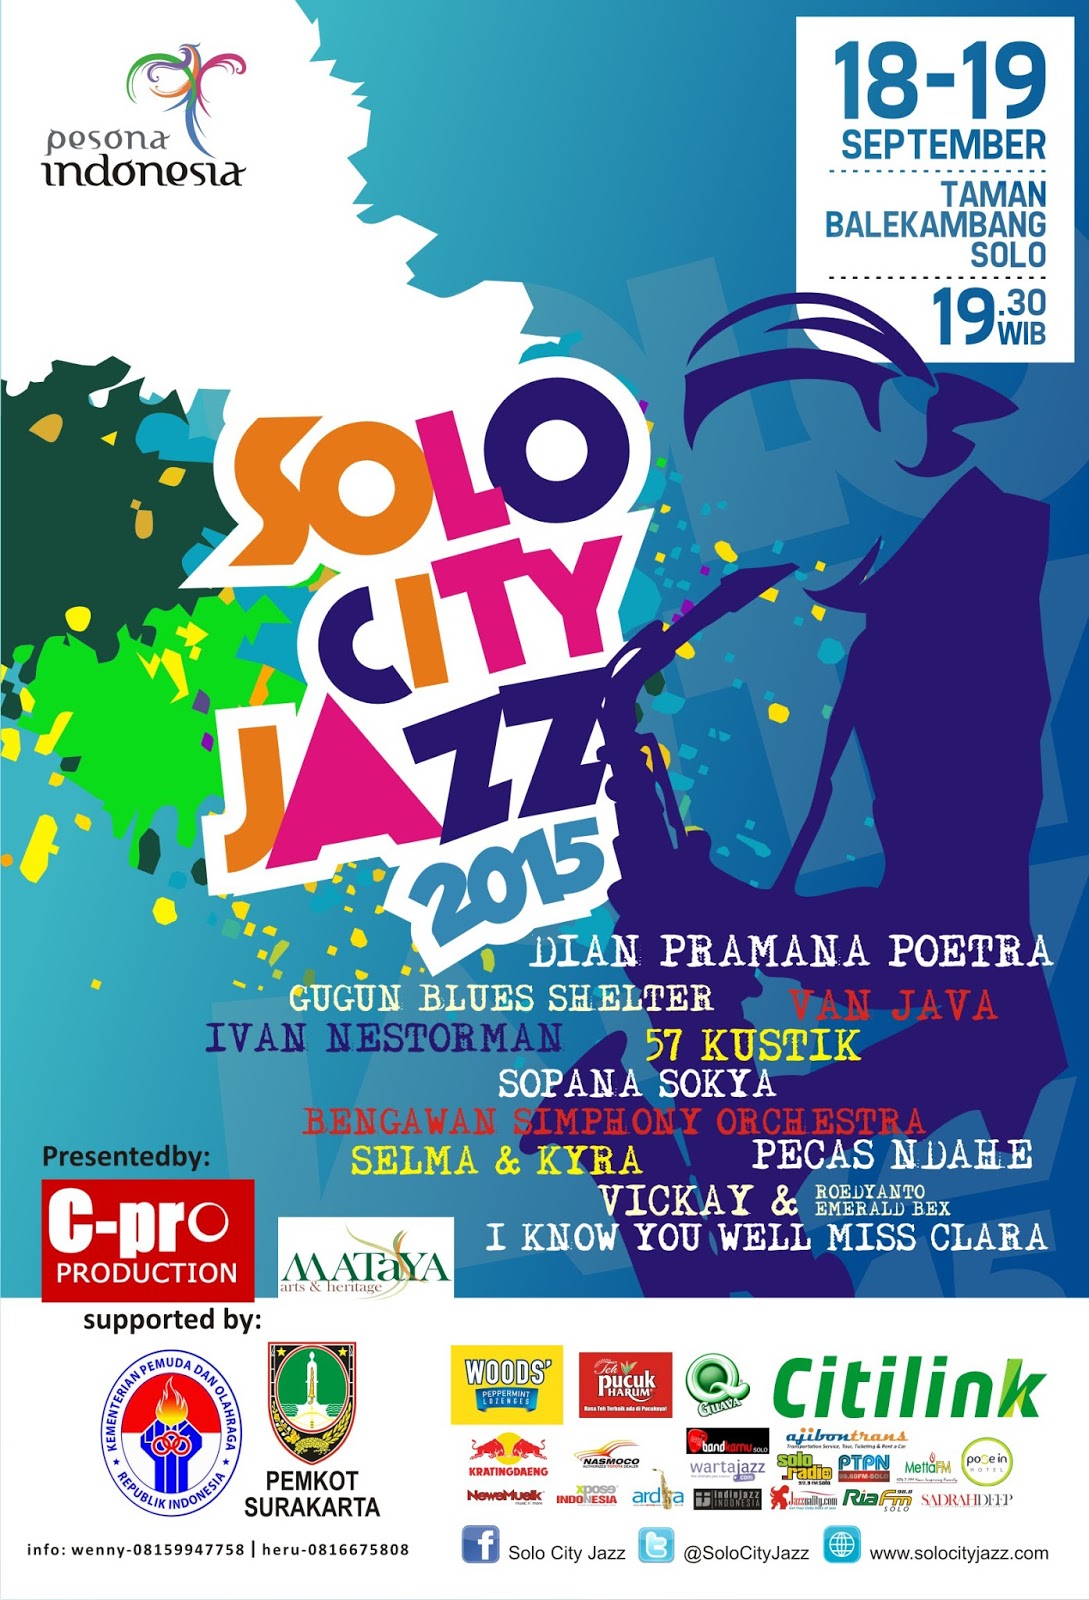 #SCJ2015 SOLO CITY JAZZ